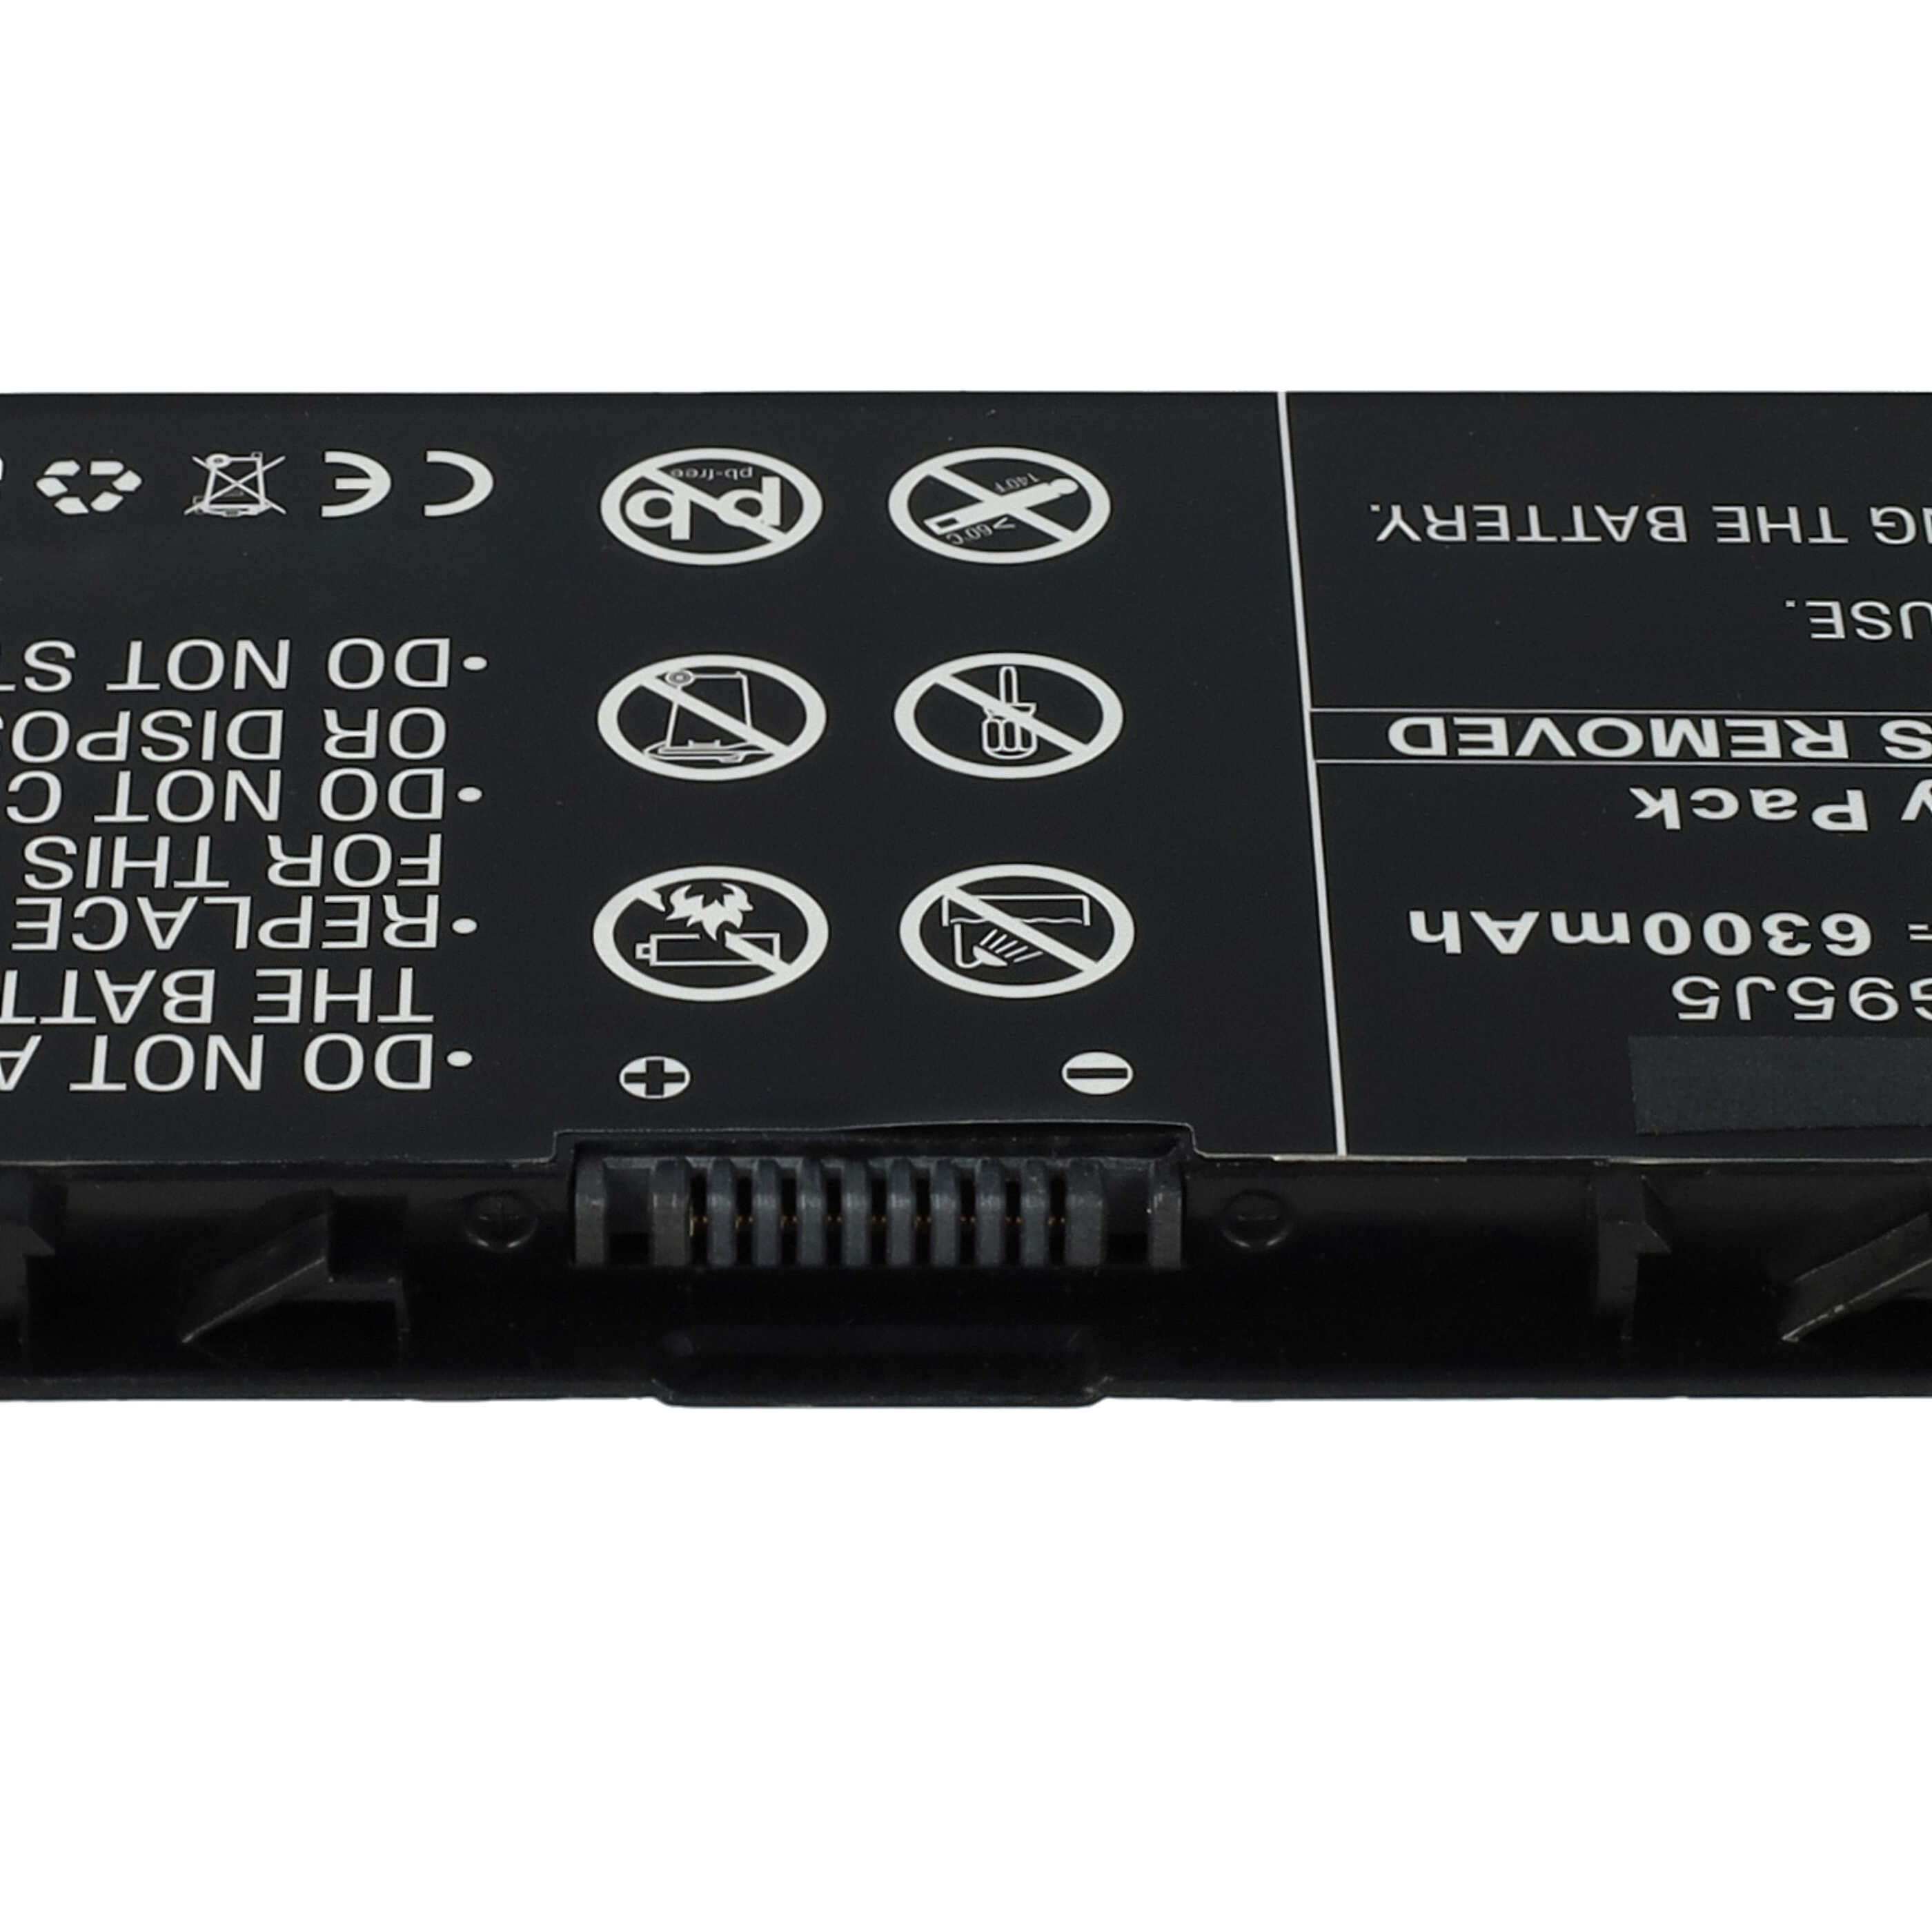 Notebook Battery Replacement for Dell 3RNFD, FLP22C01, G95J5, V8XN3 - 6300mAh 7.4V Li-Ion